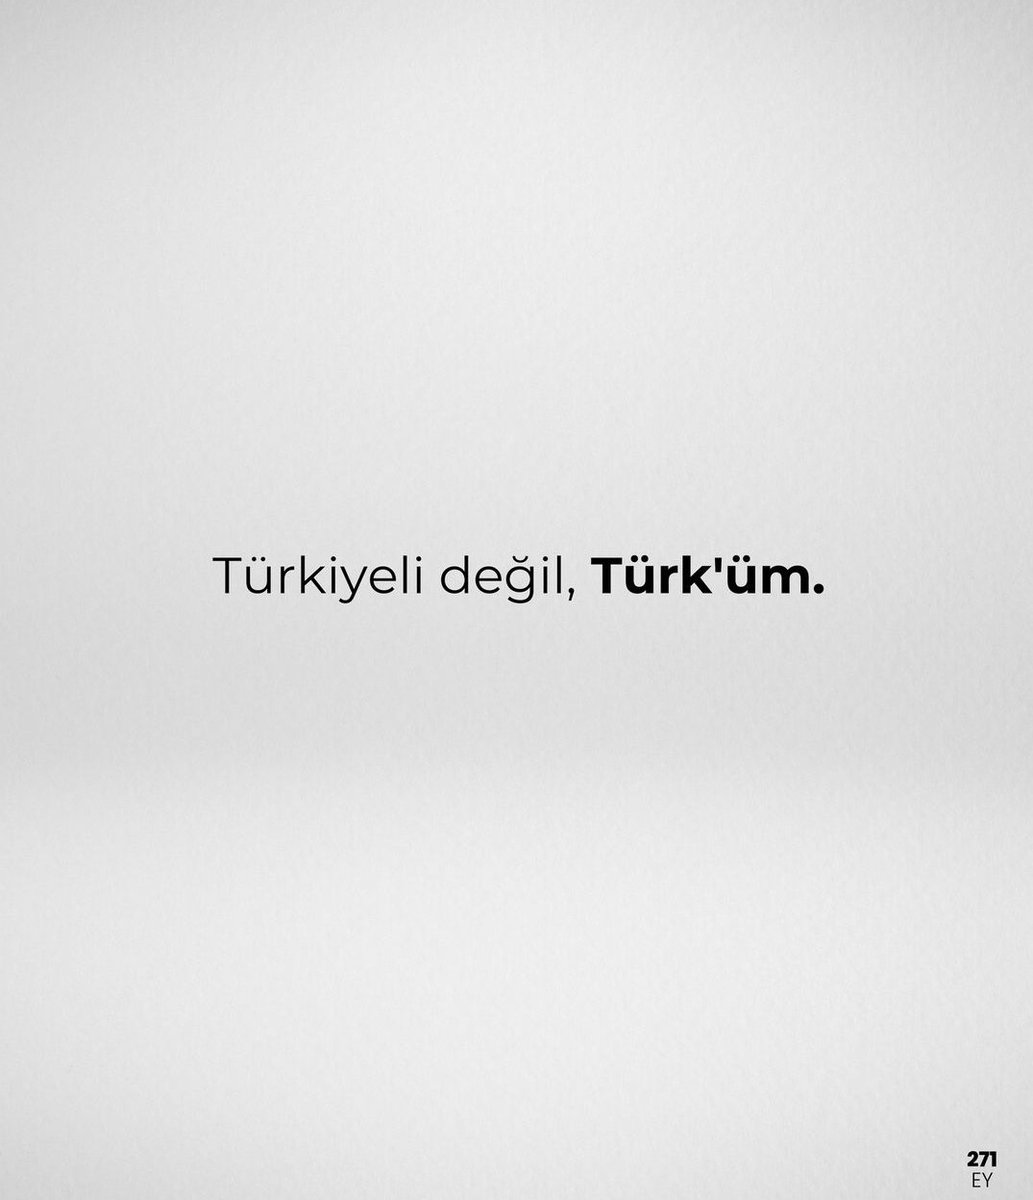 Yoklama alıyoruz 👇 Türkiyeli değil, Türk'üm